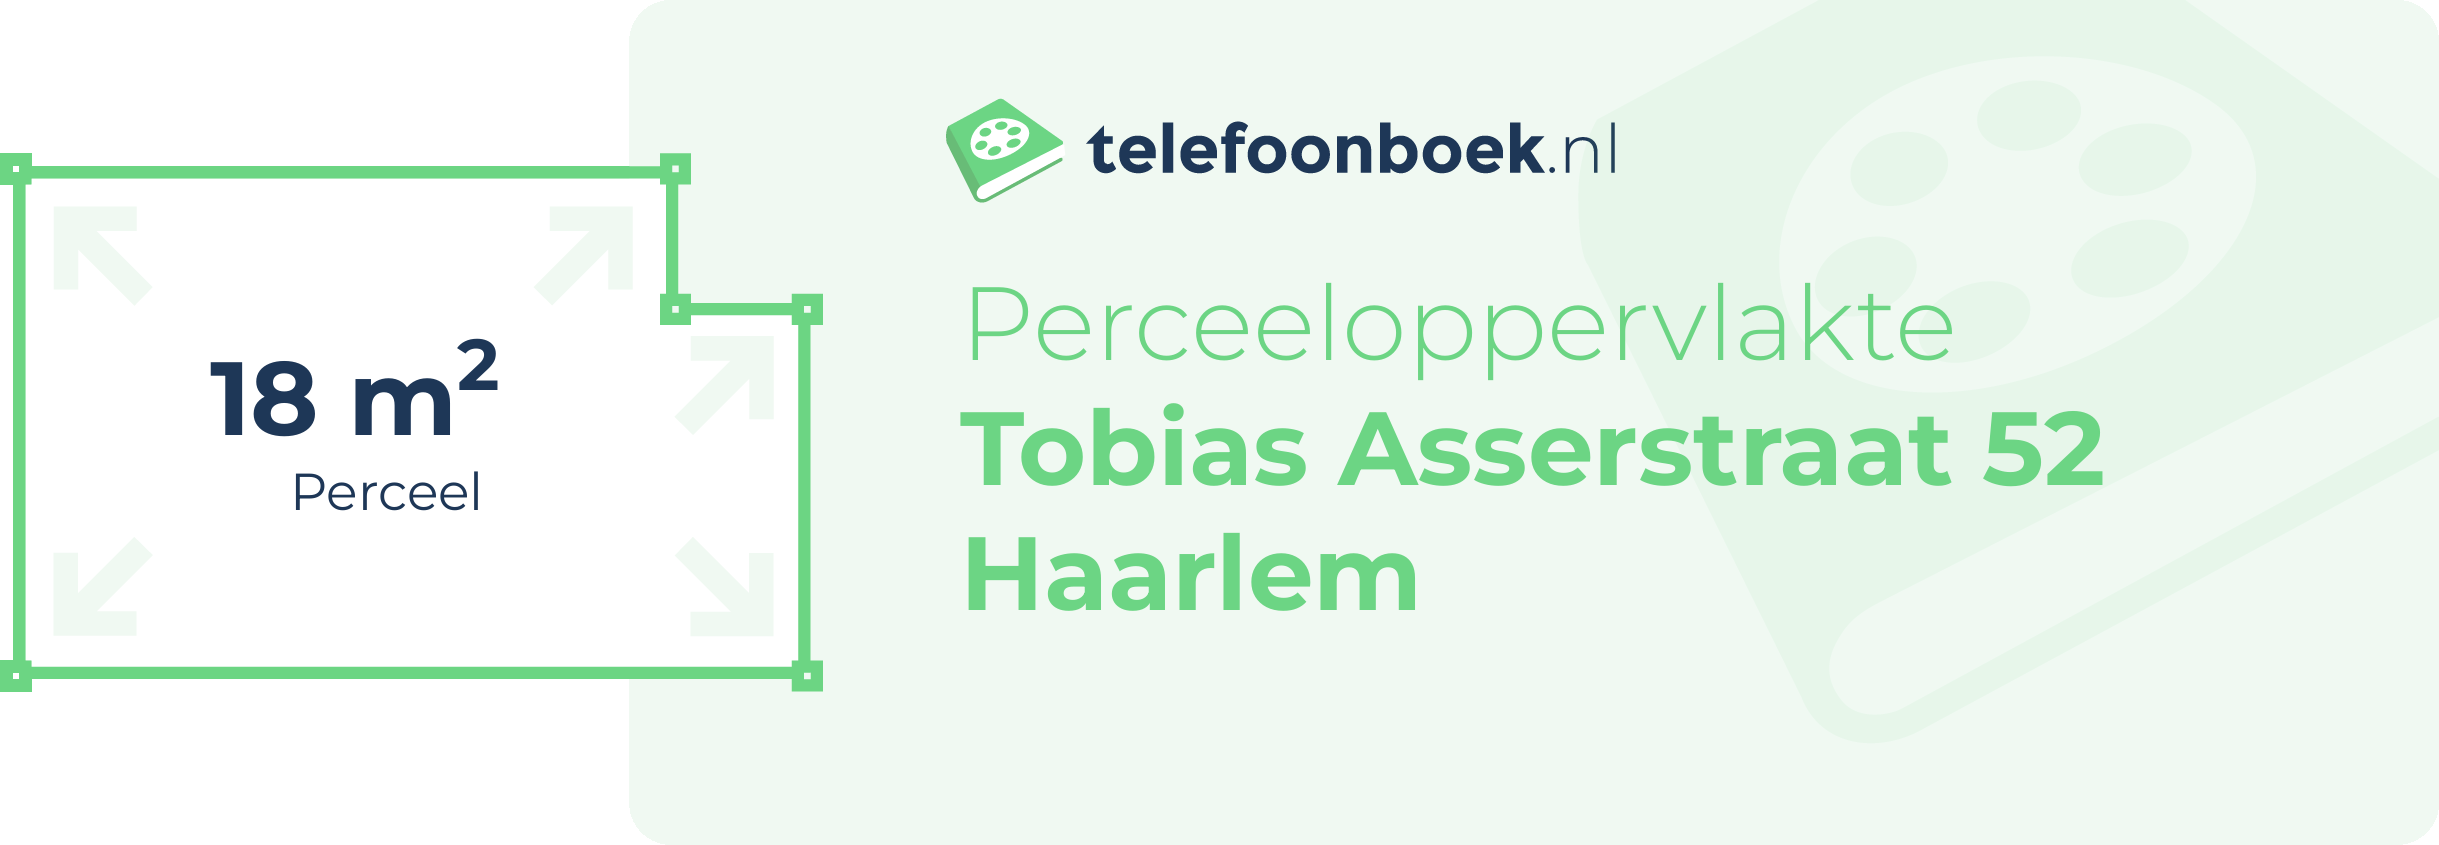 Perceeloppervlakte Tobias Asserstraat 52 Haarlem